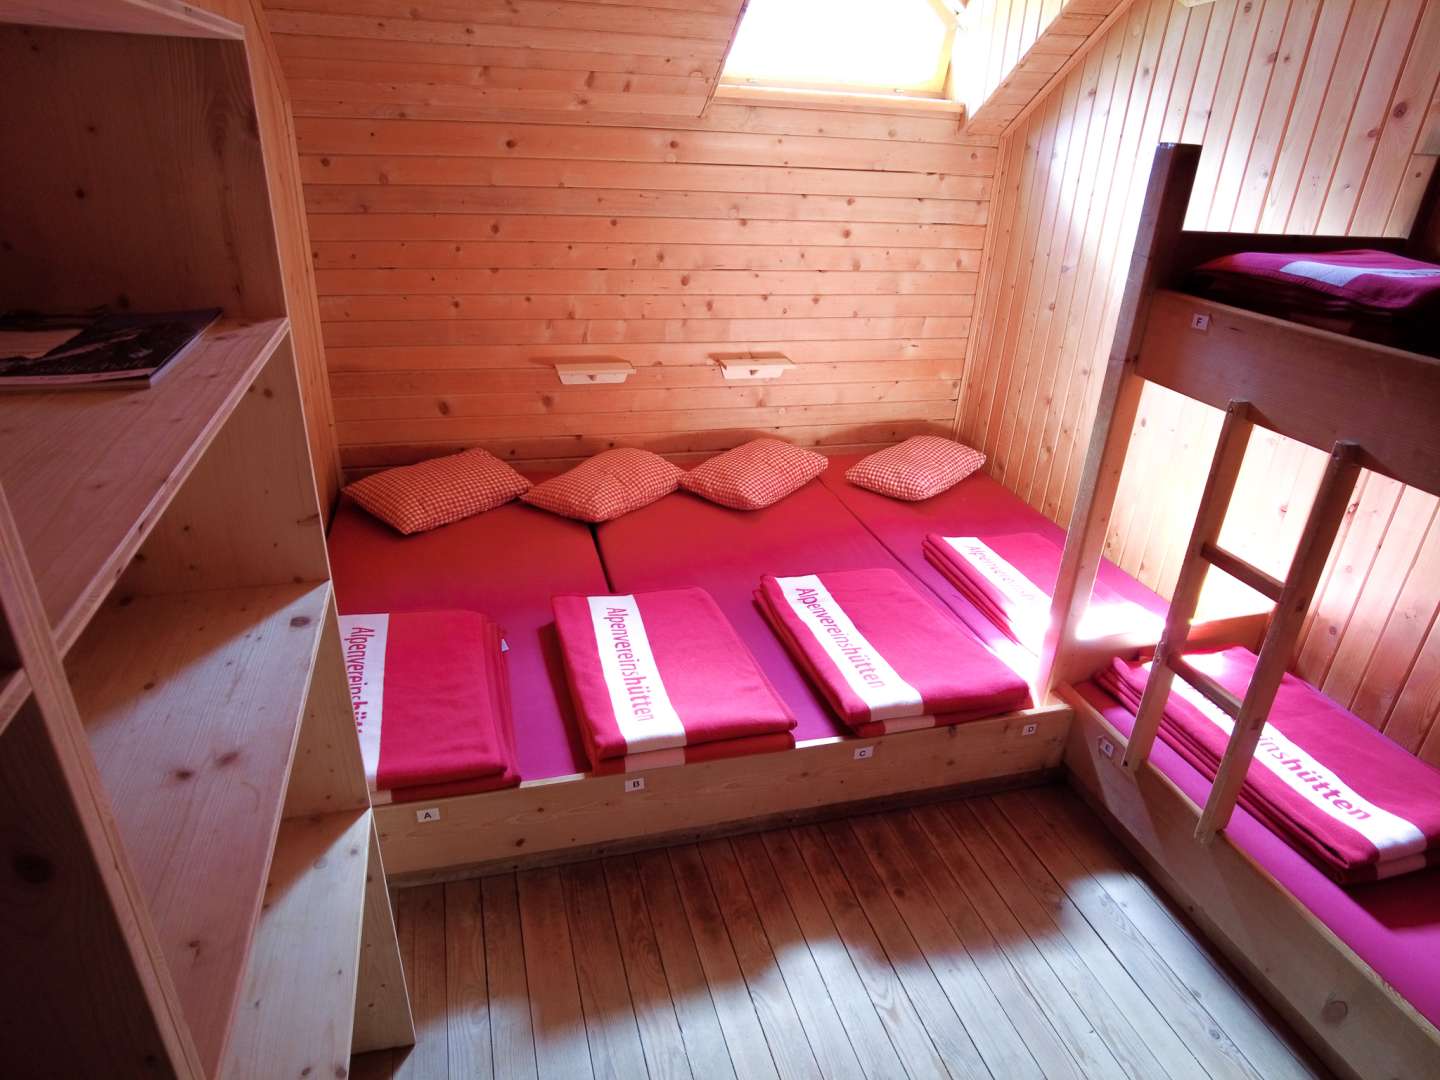 Ein Zimmer mit einem Matratzenlager, das mit roter Bettwäsche bezogen ist. An der Seite steht ein Hochbett mit demselben Bettenbezug.